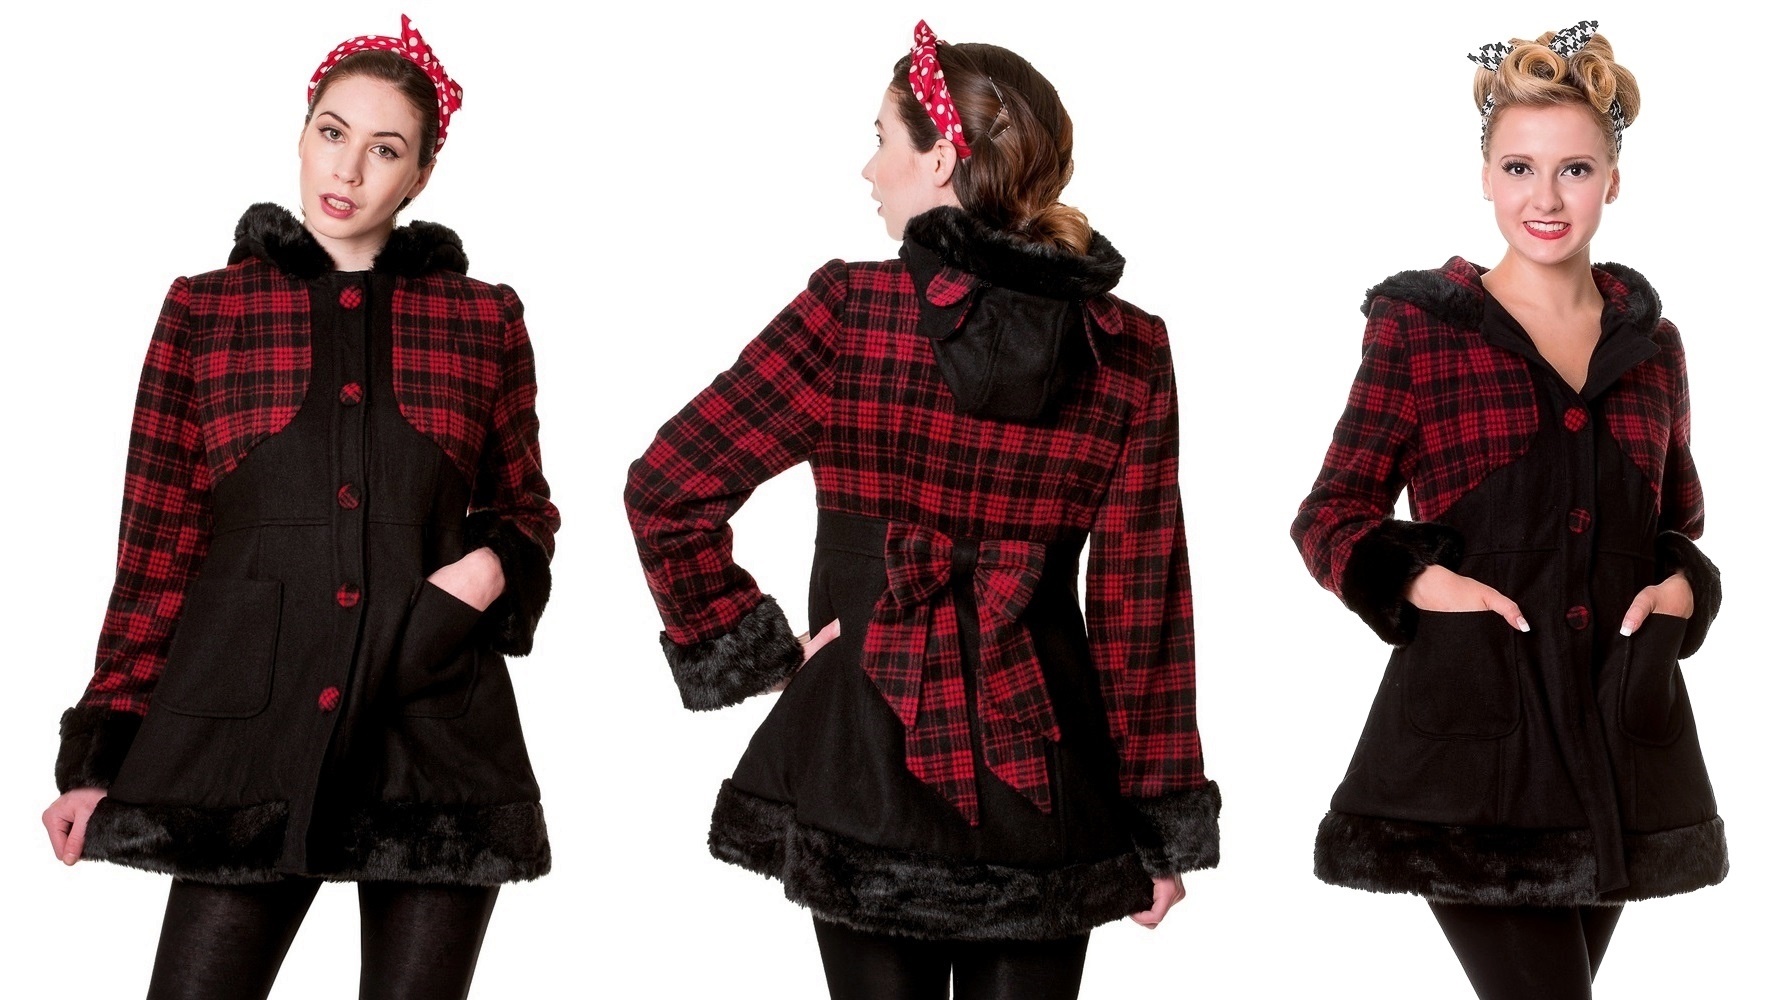 Rockabilly kabát dámský černý & červený kostkovaný